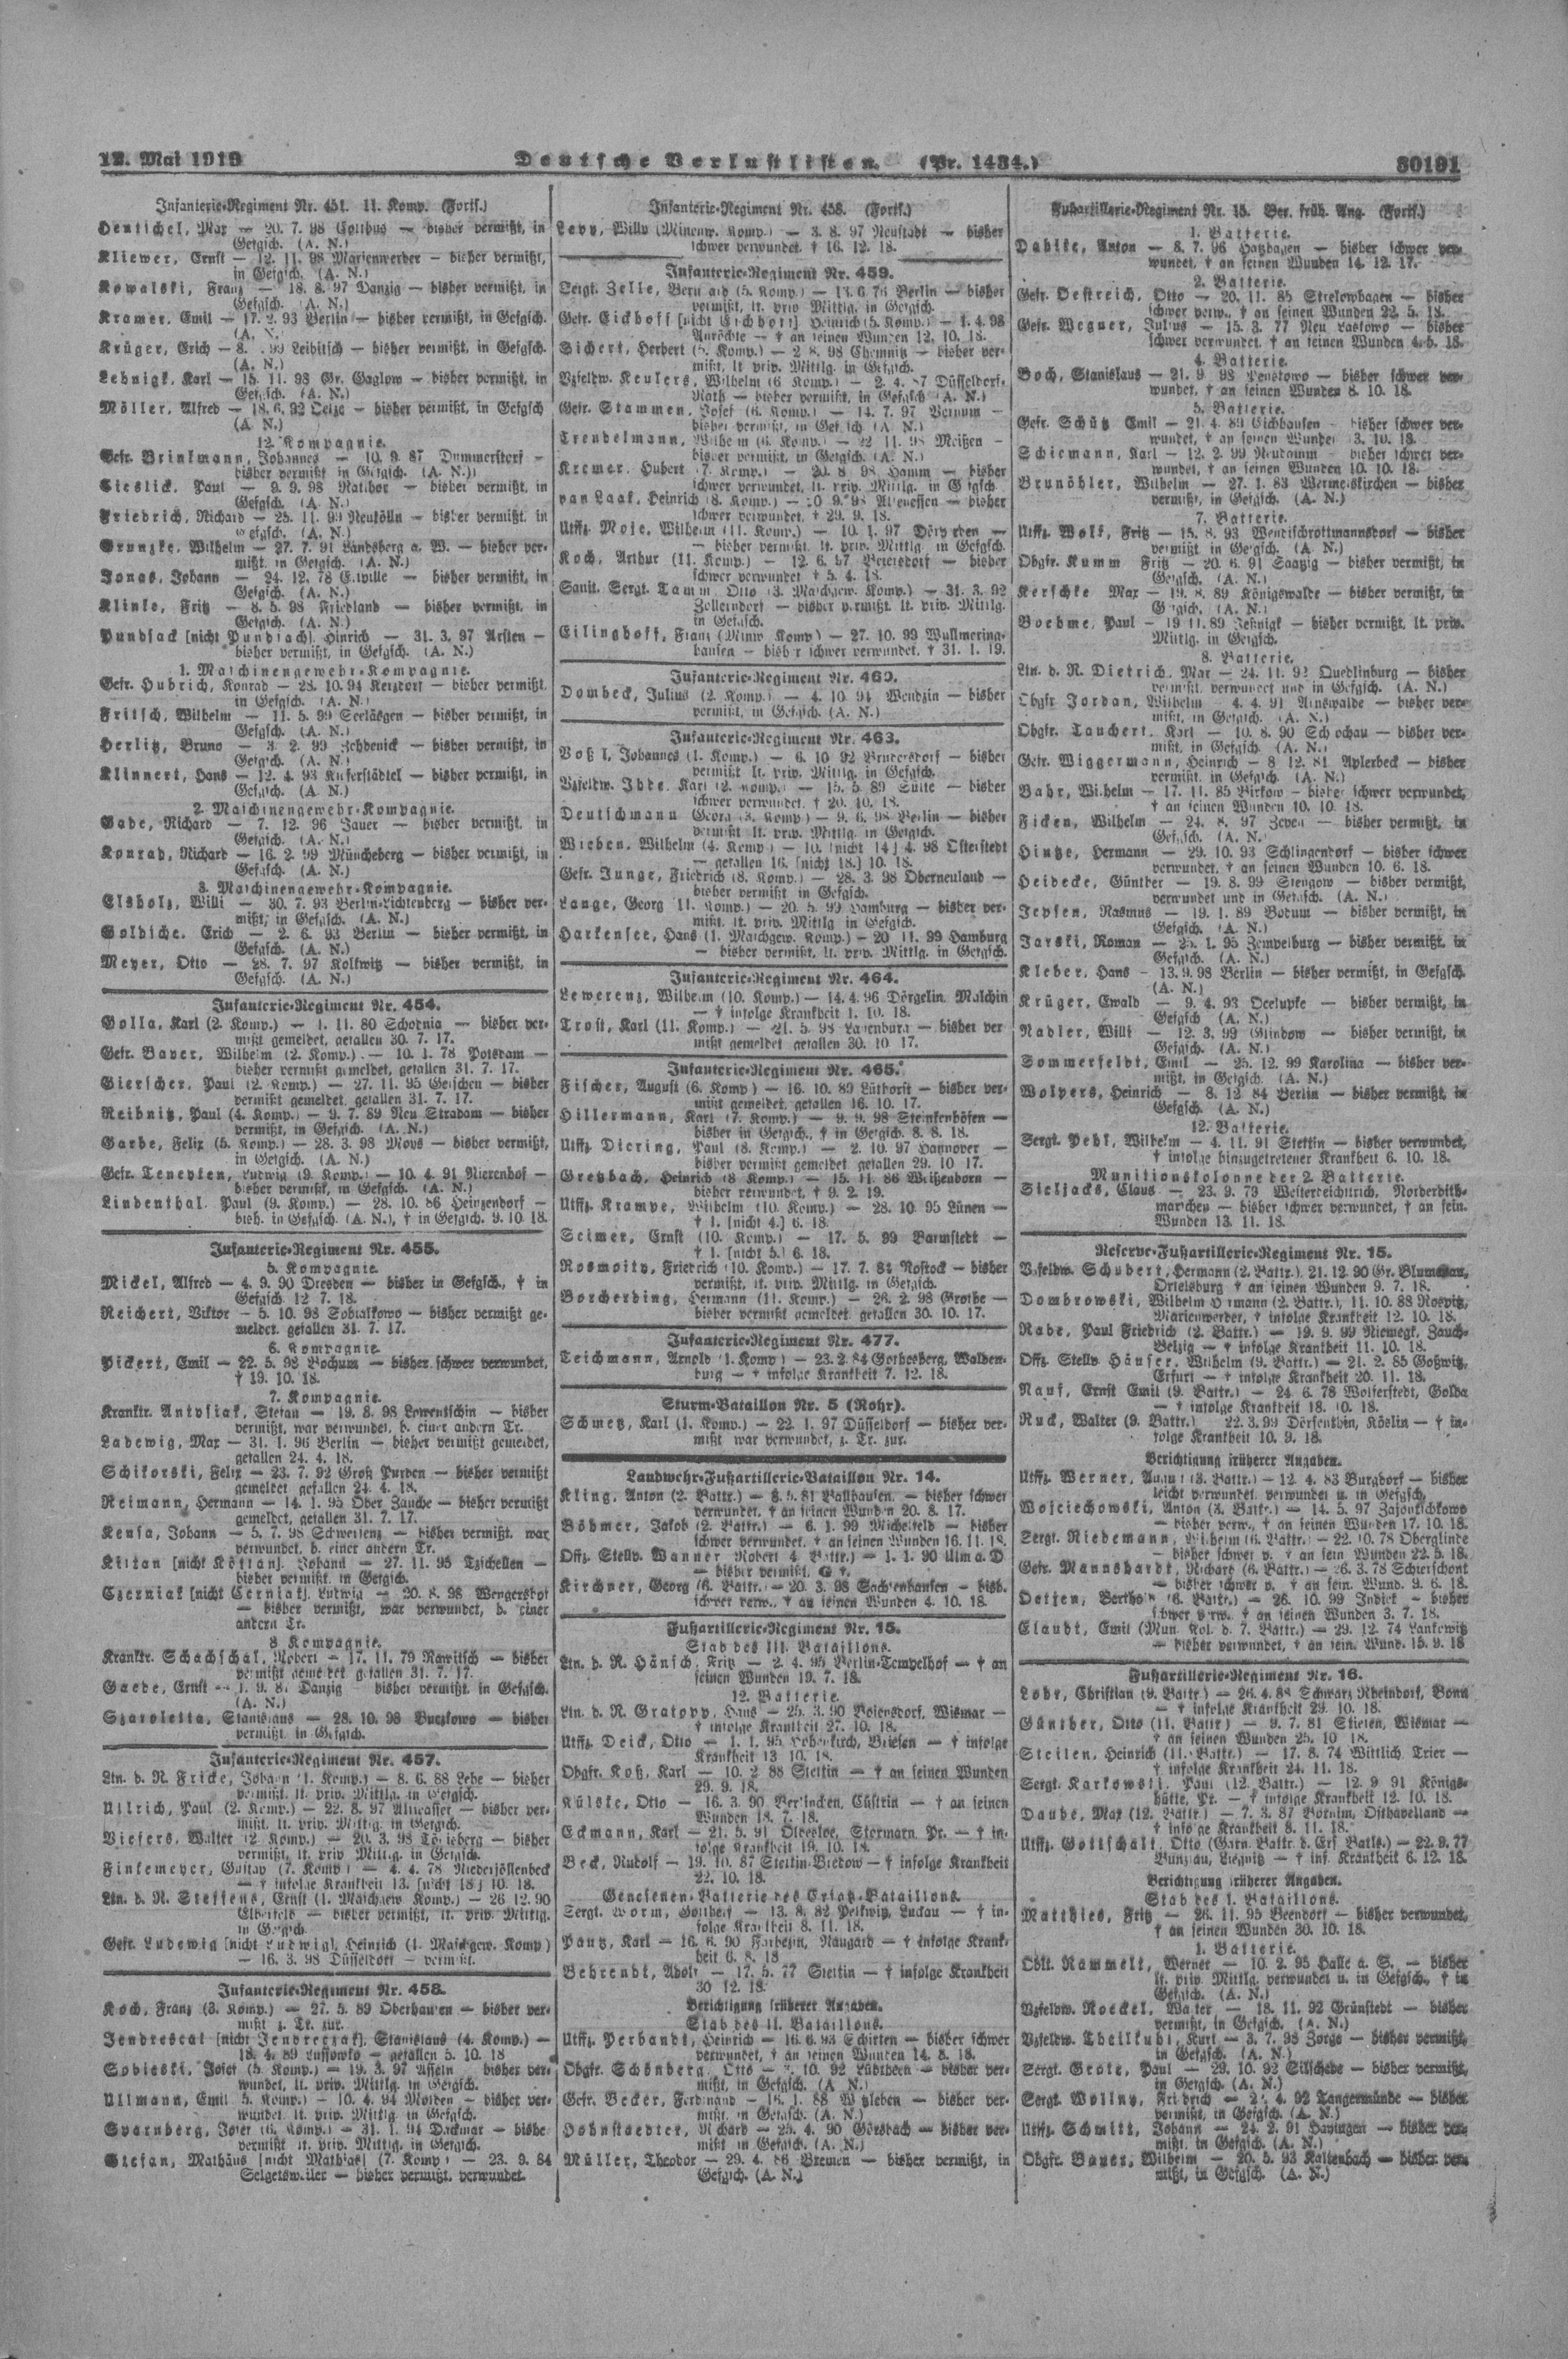 Verlustlisten 1. Weltkrieg, page 30191: Gratopp Hans (Boiensdorf, Wismar)